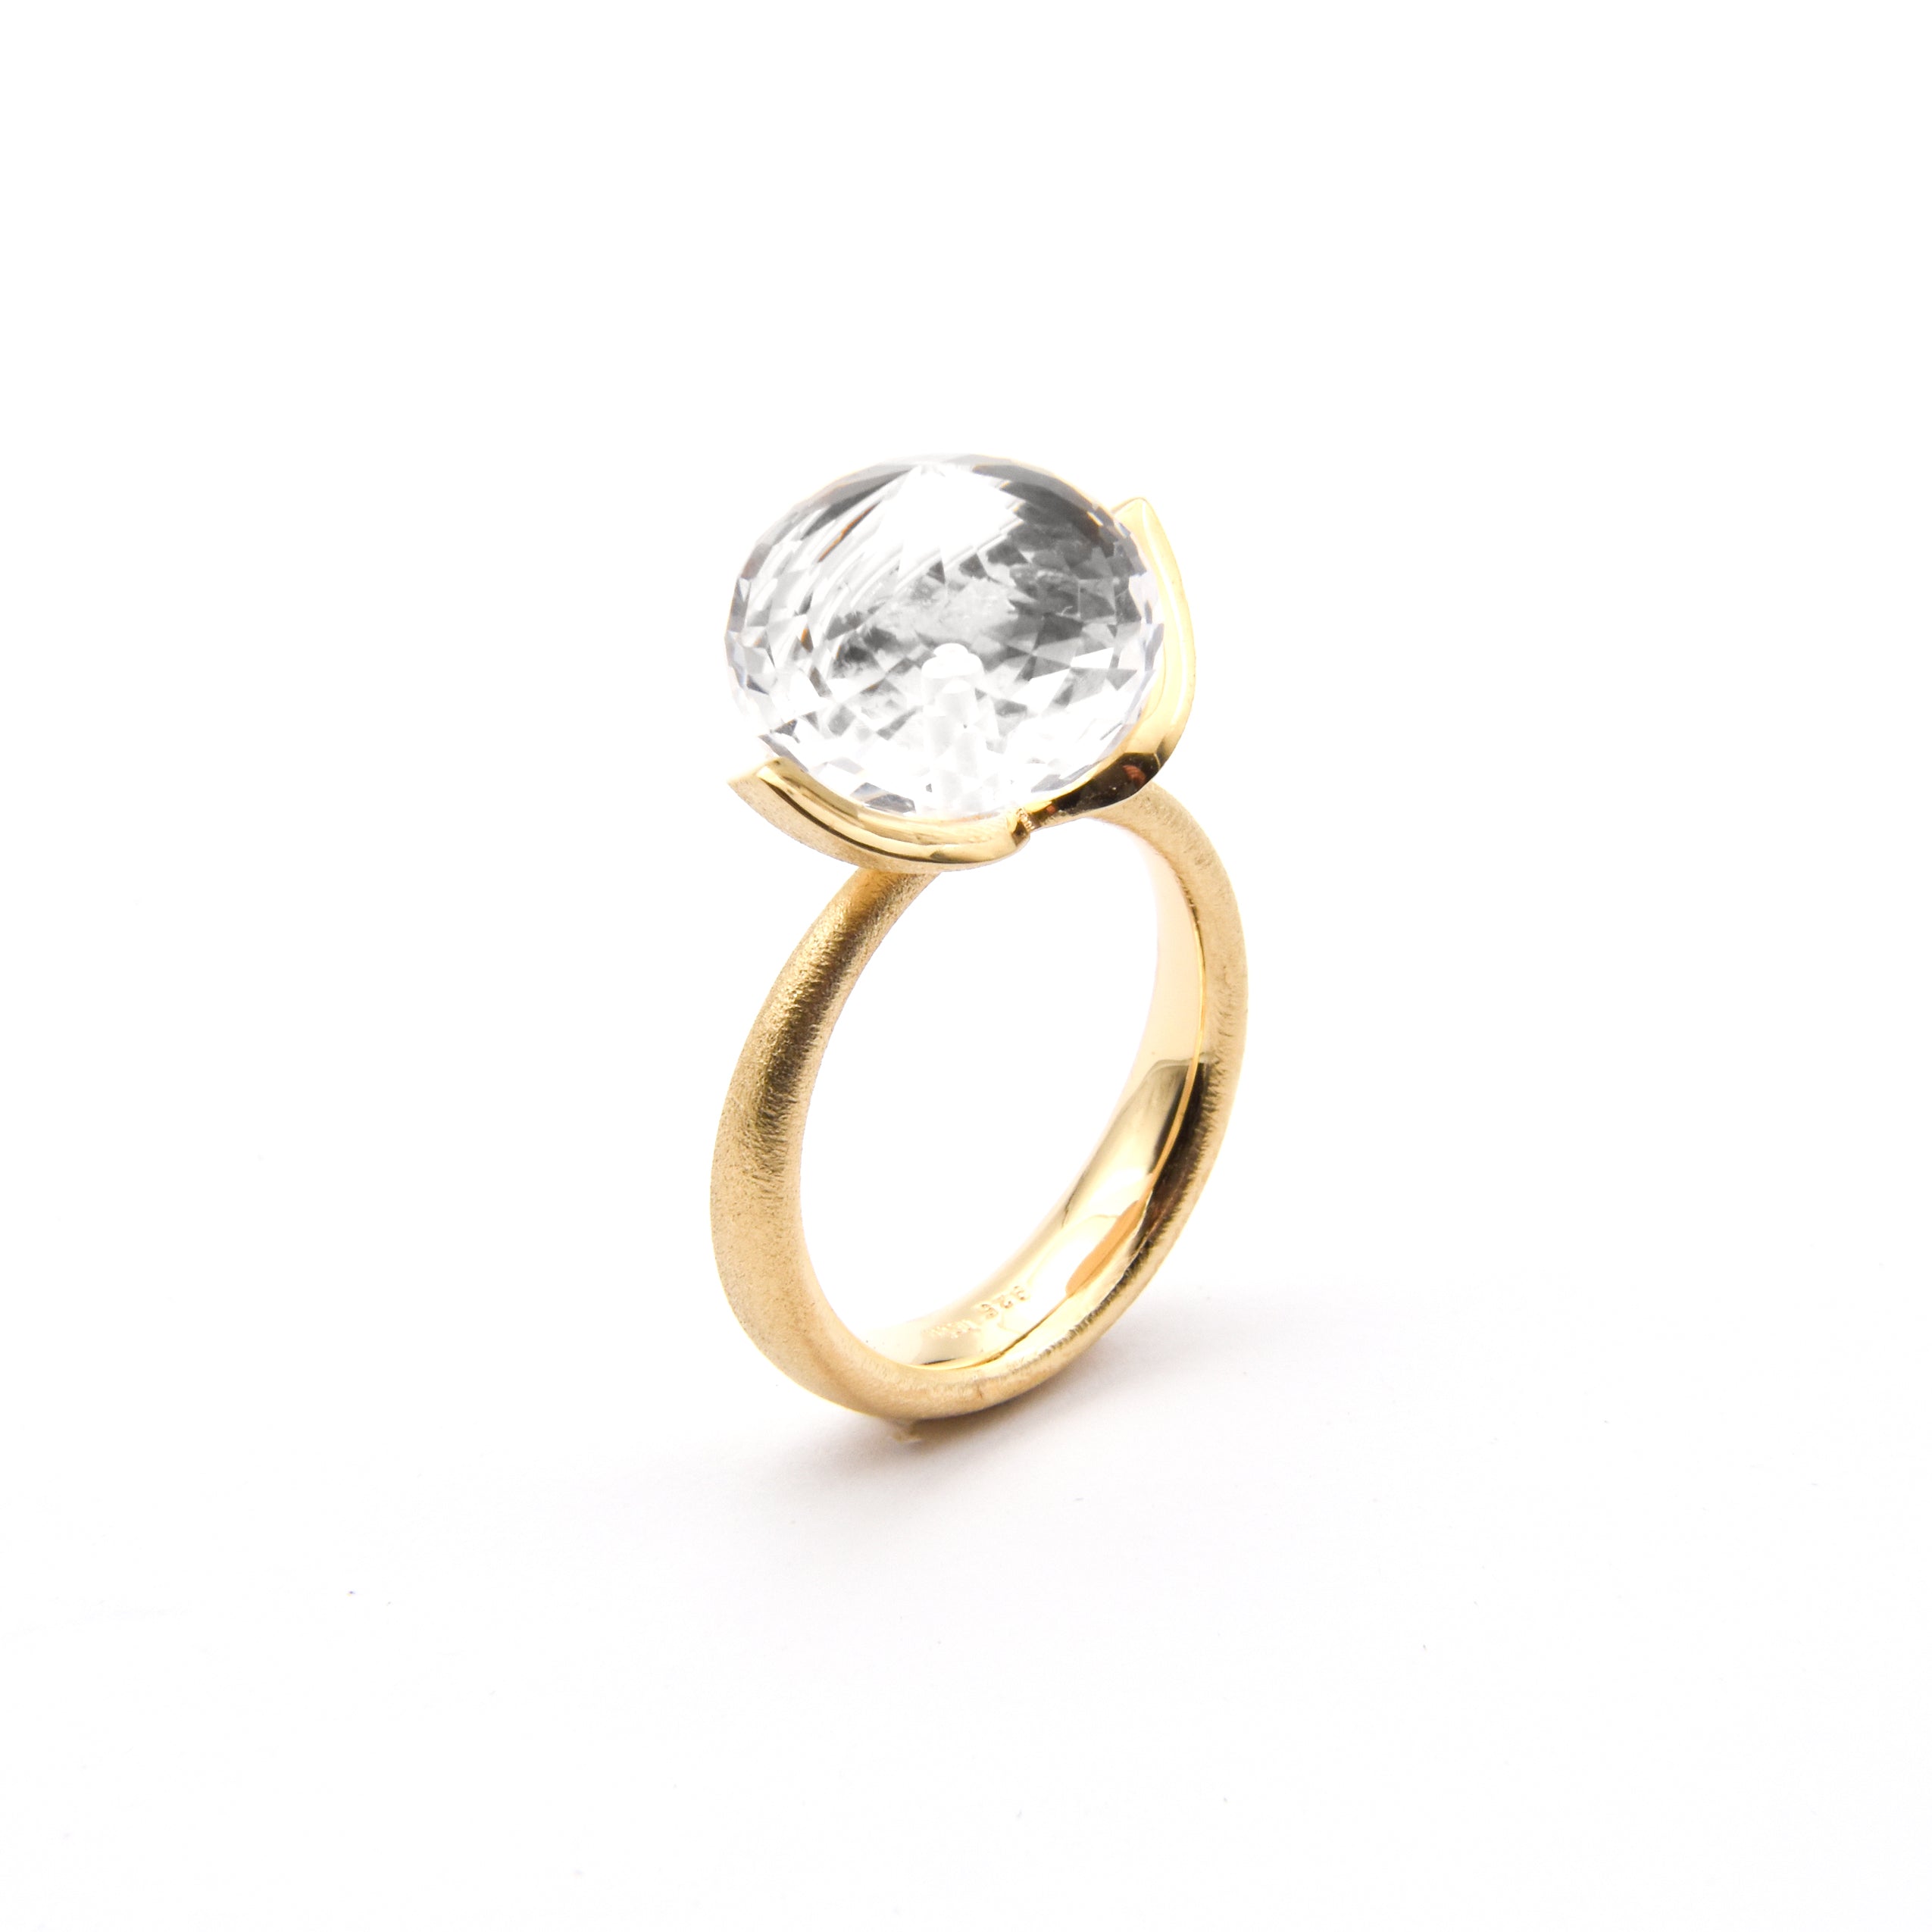 Dolce ring "groot" met bergkristal 925/-